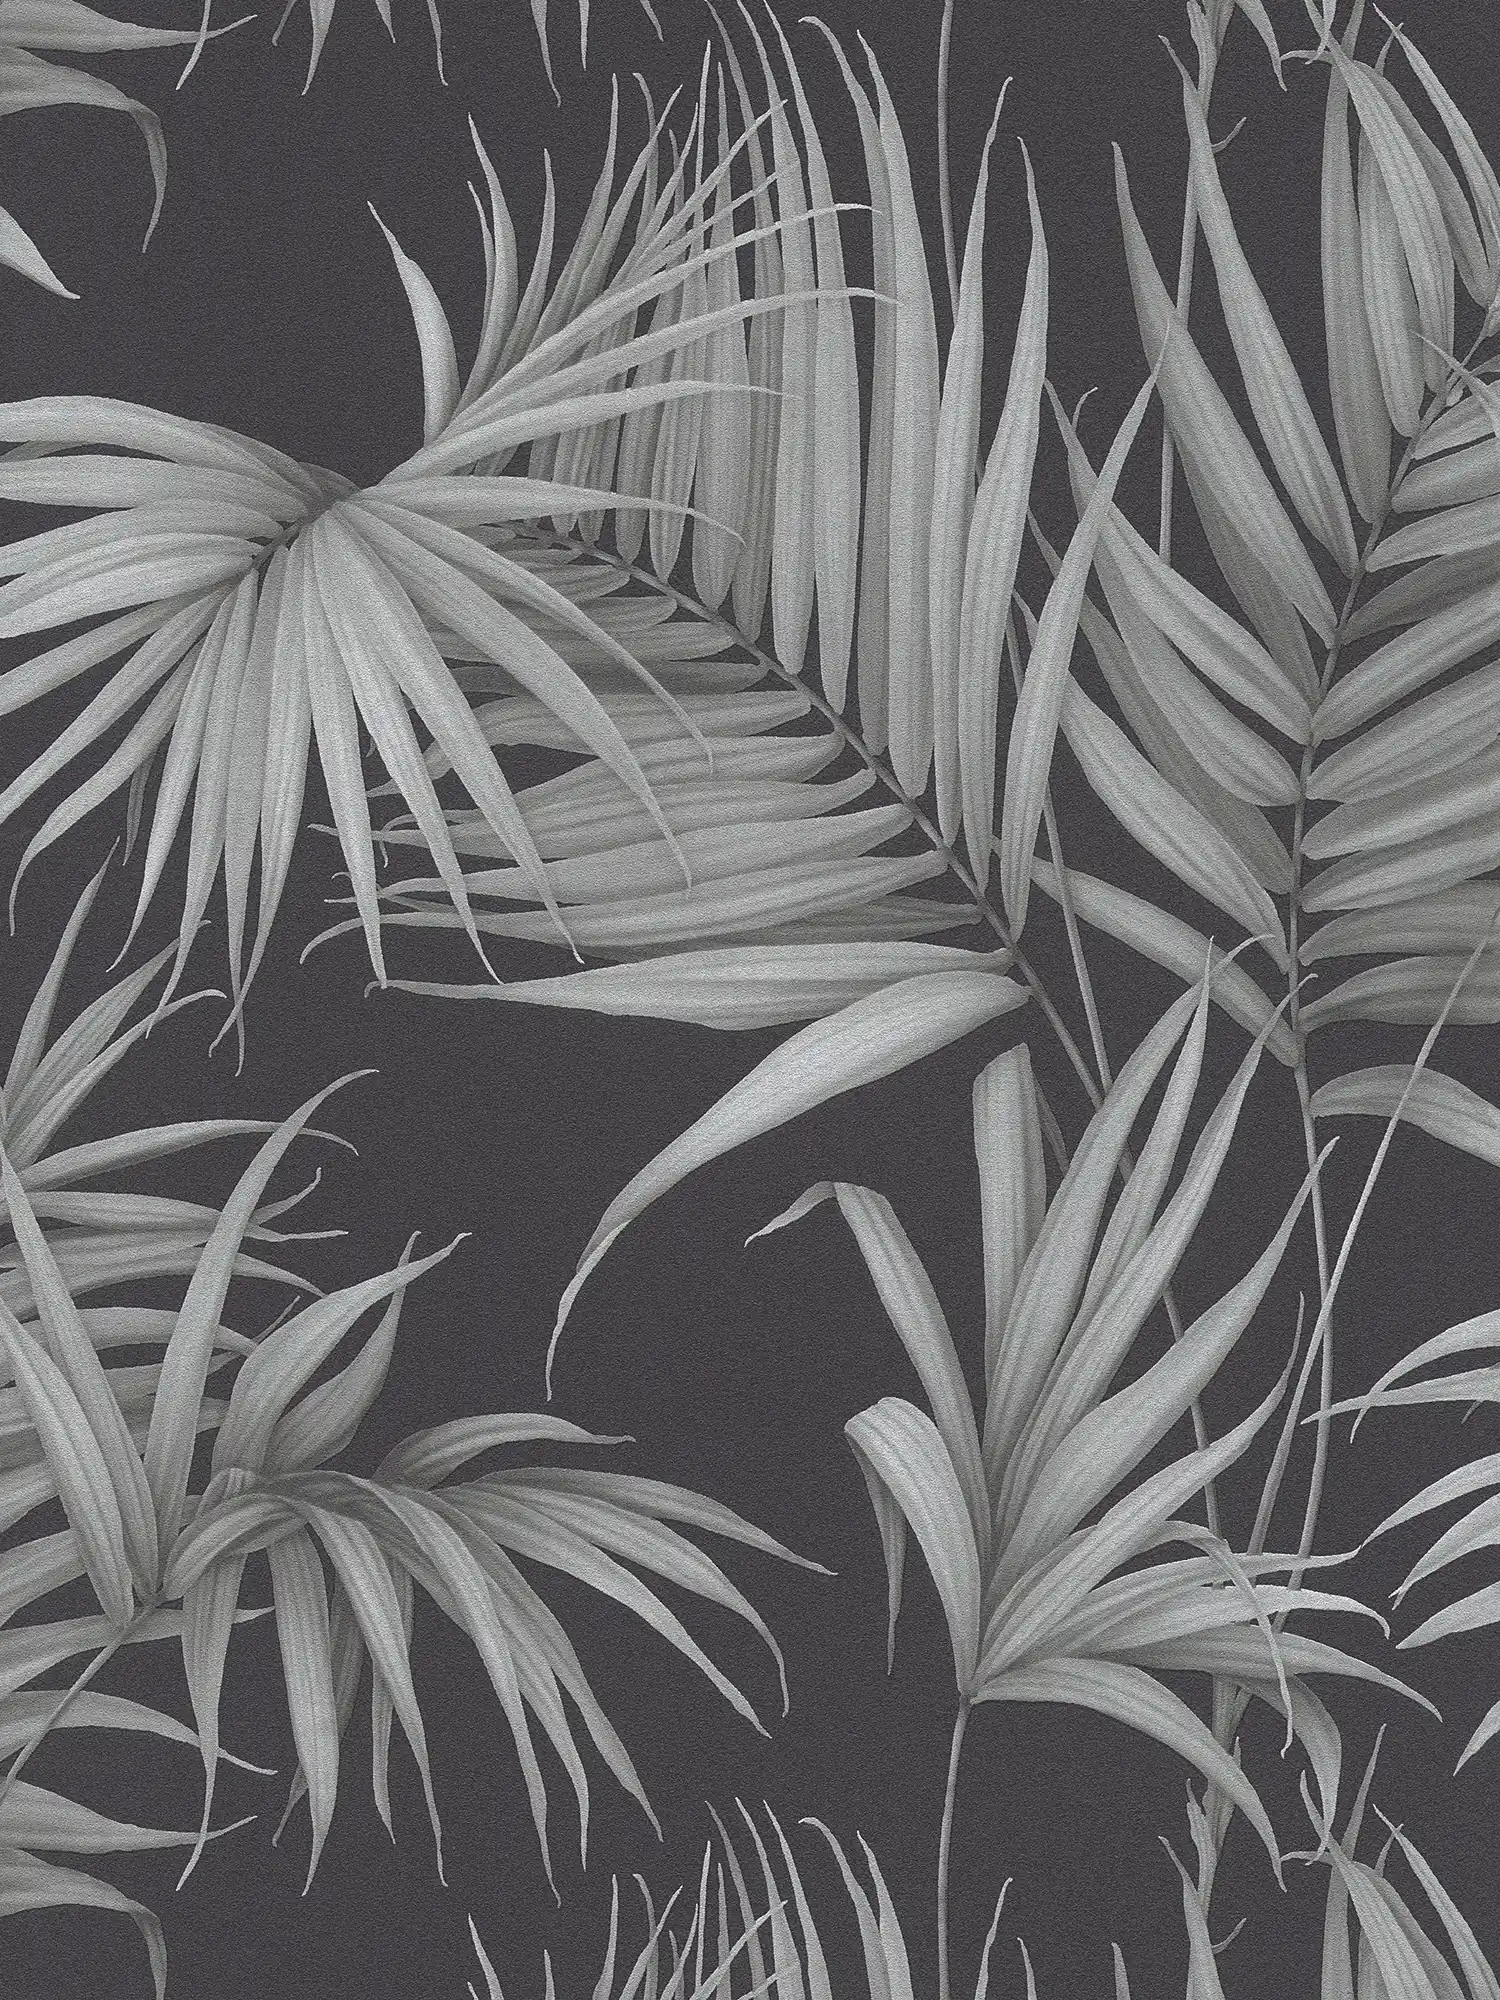 Tropisch behang met varenbladeren - grijs, zwart
